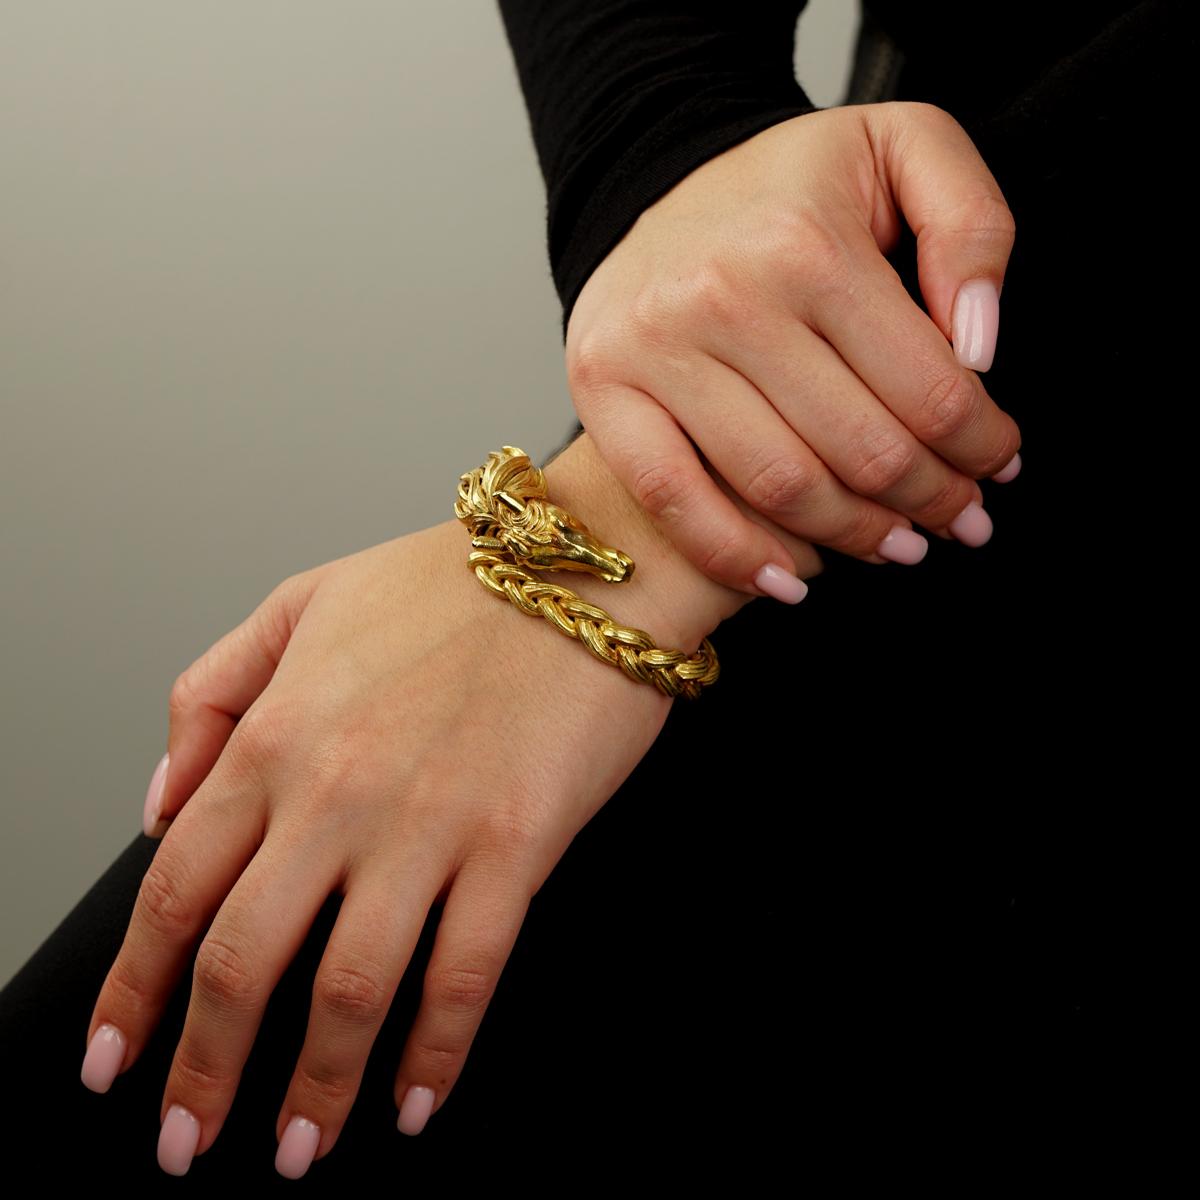 Un magnifique bracelet Hermès représentant une tête et une crinière de cheval en or jaune 18 carats. Le bracelet pèse 117,3 grammes.

Sku : 916